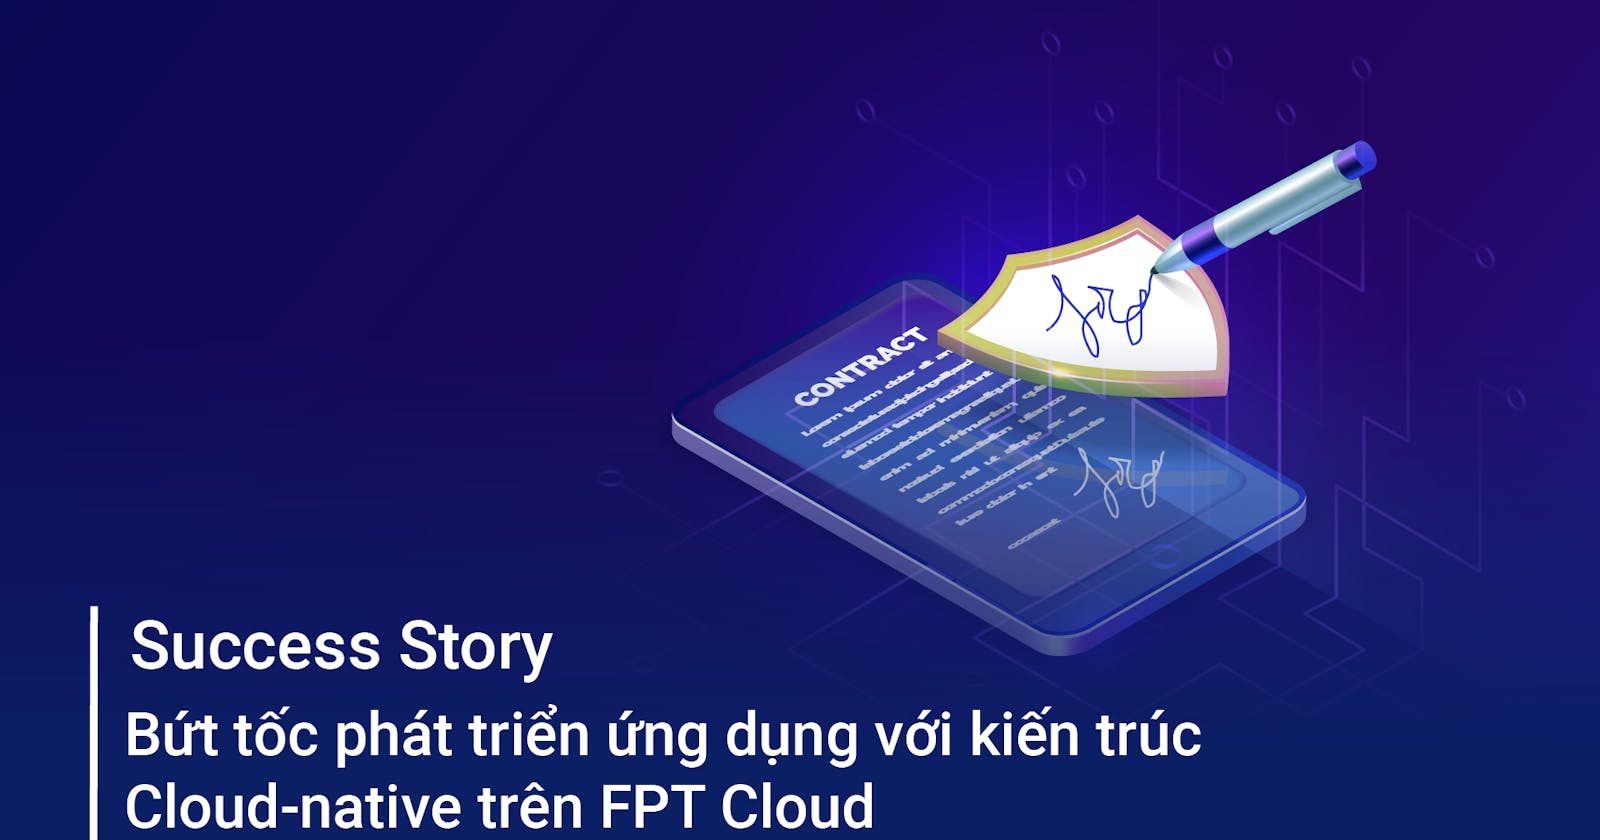 Bứt tốc phát triển ứng dụng với kiến trúc Cloud-native trên FPT Cloud